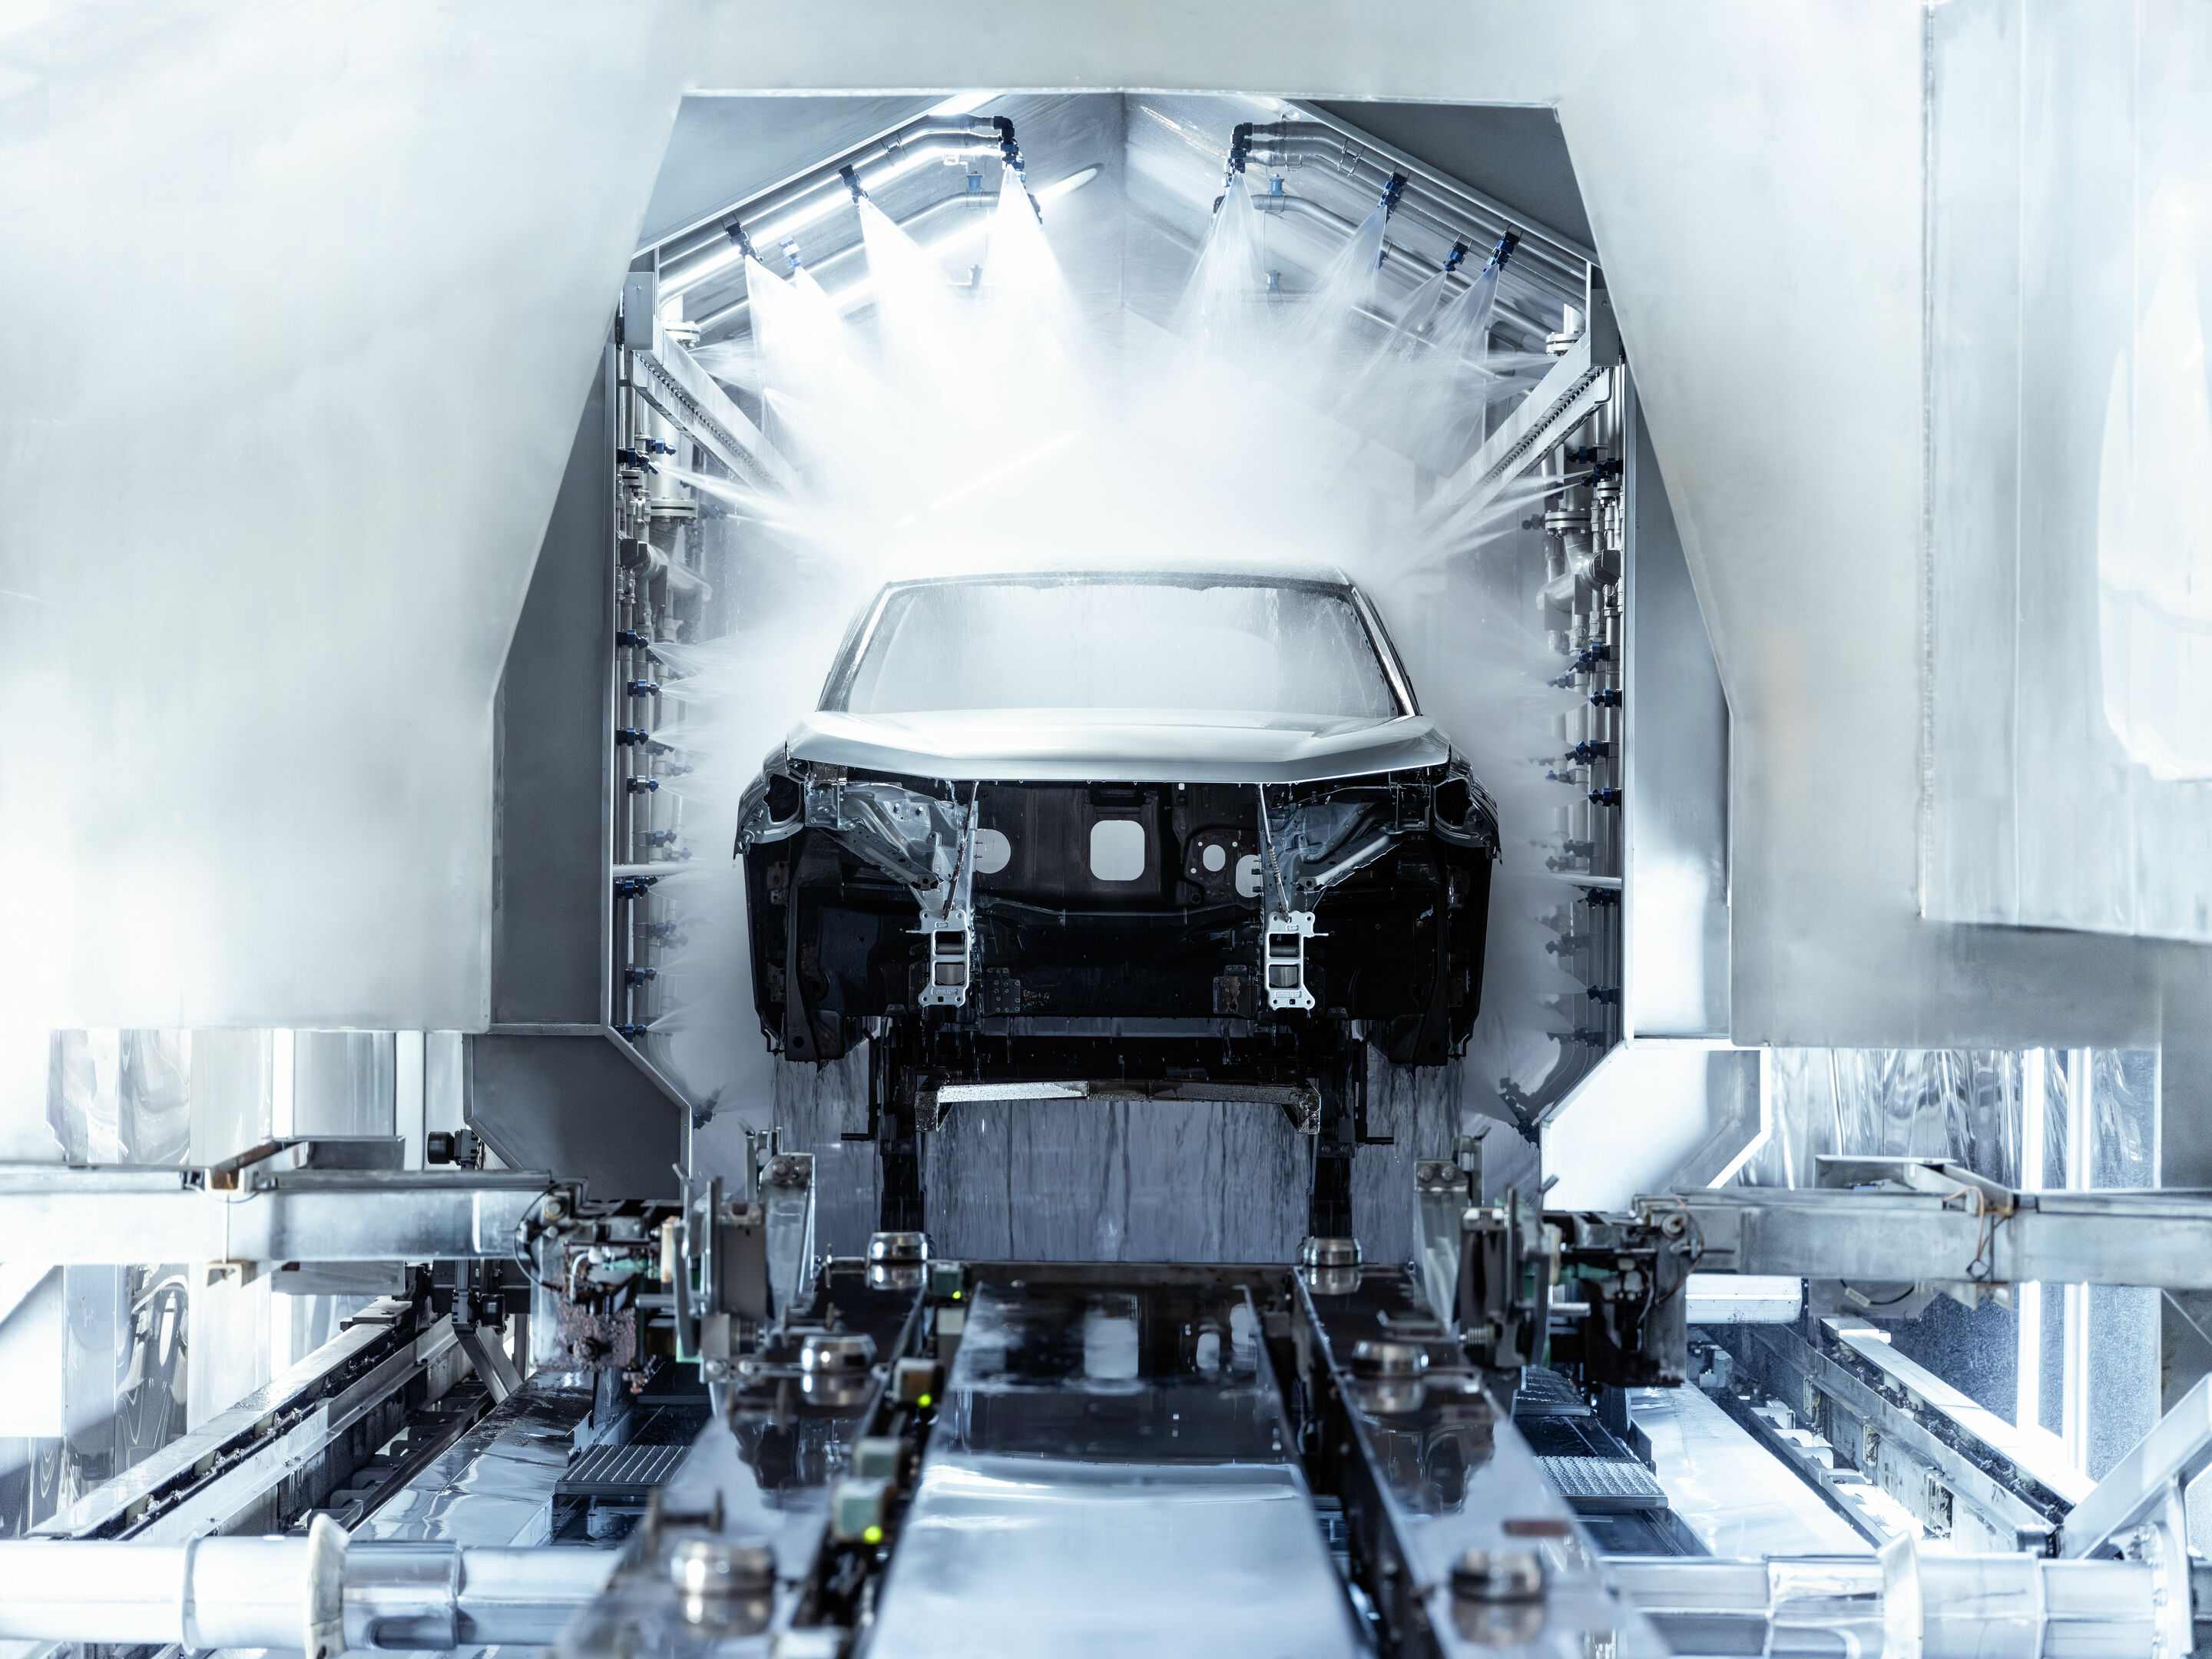 Production Audi Q6 e-tron at the Ingolstadt site